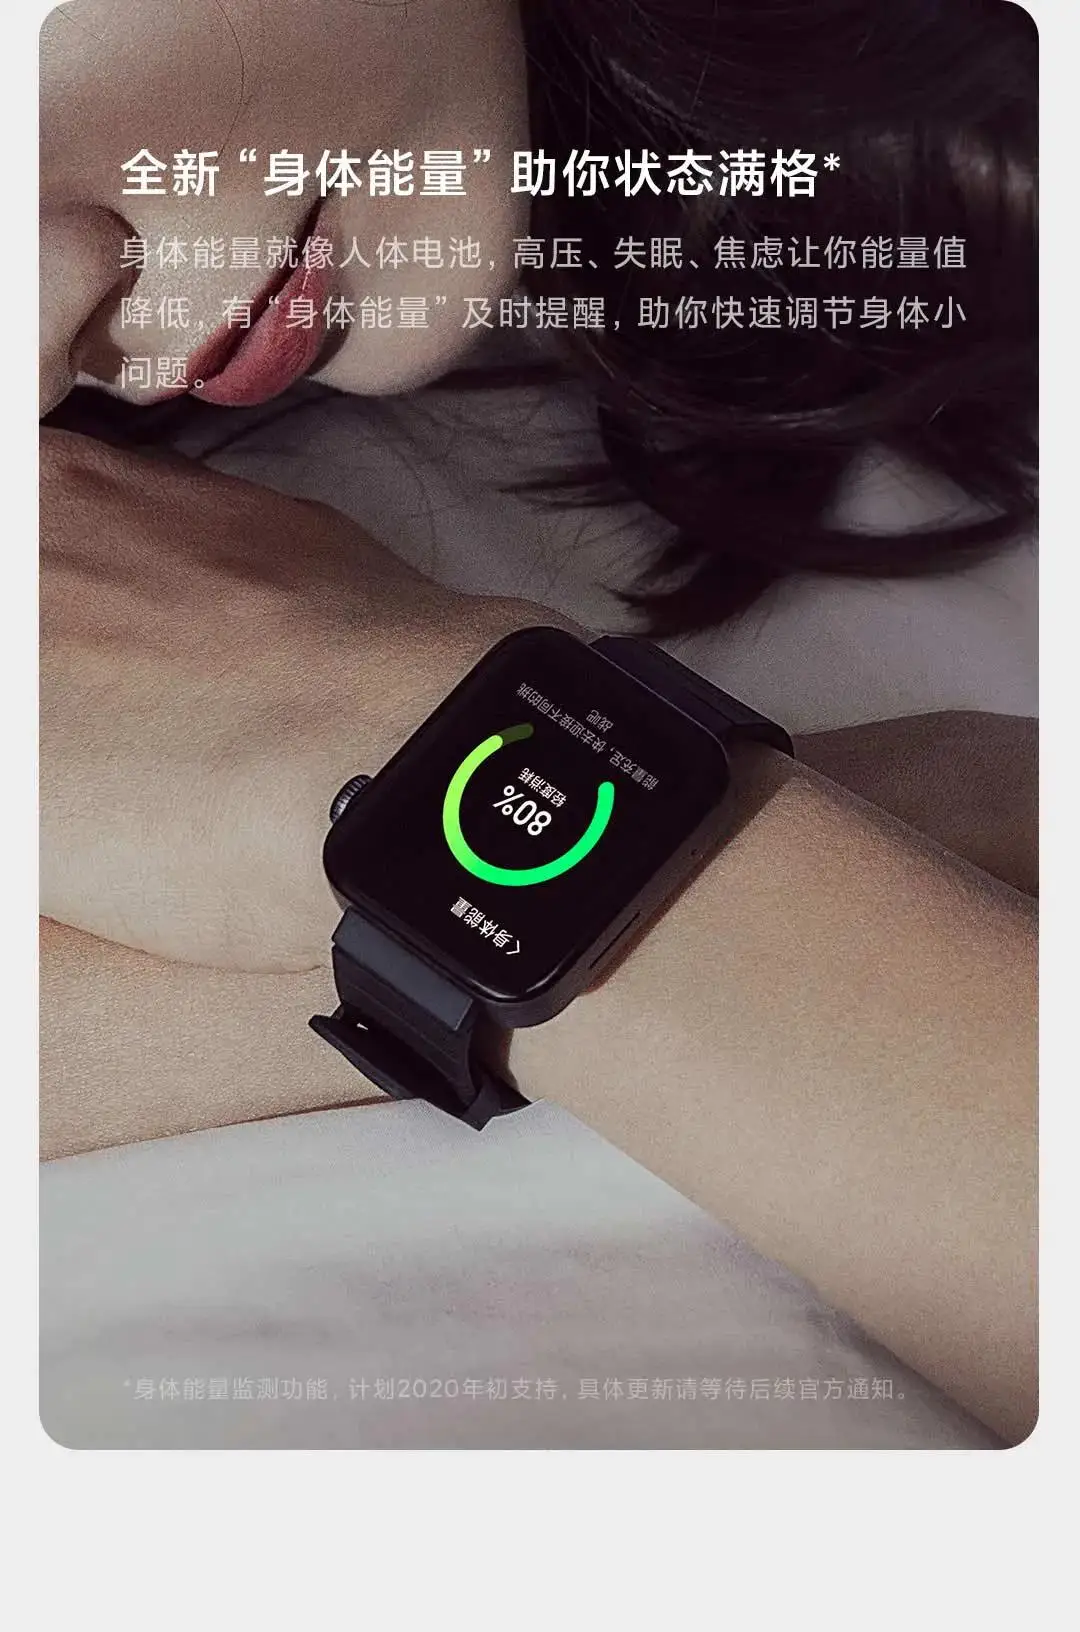 Xiaomi Mi Watch часы CN версия MIUI для Smartwatch процессор Qualcomm поддержка воспроизведения музыки дистанционное управление домашнее устройство спорт здоровье